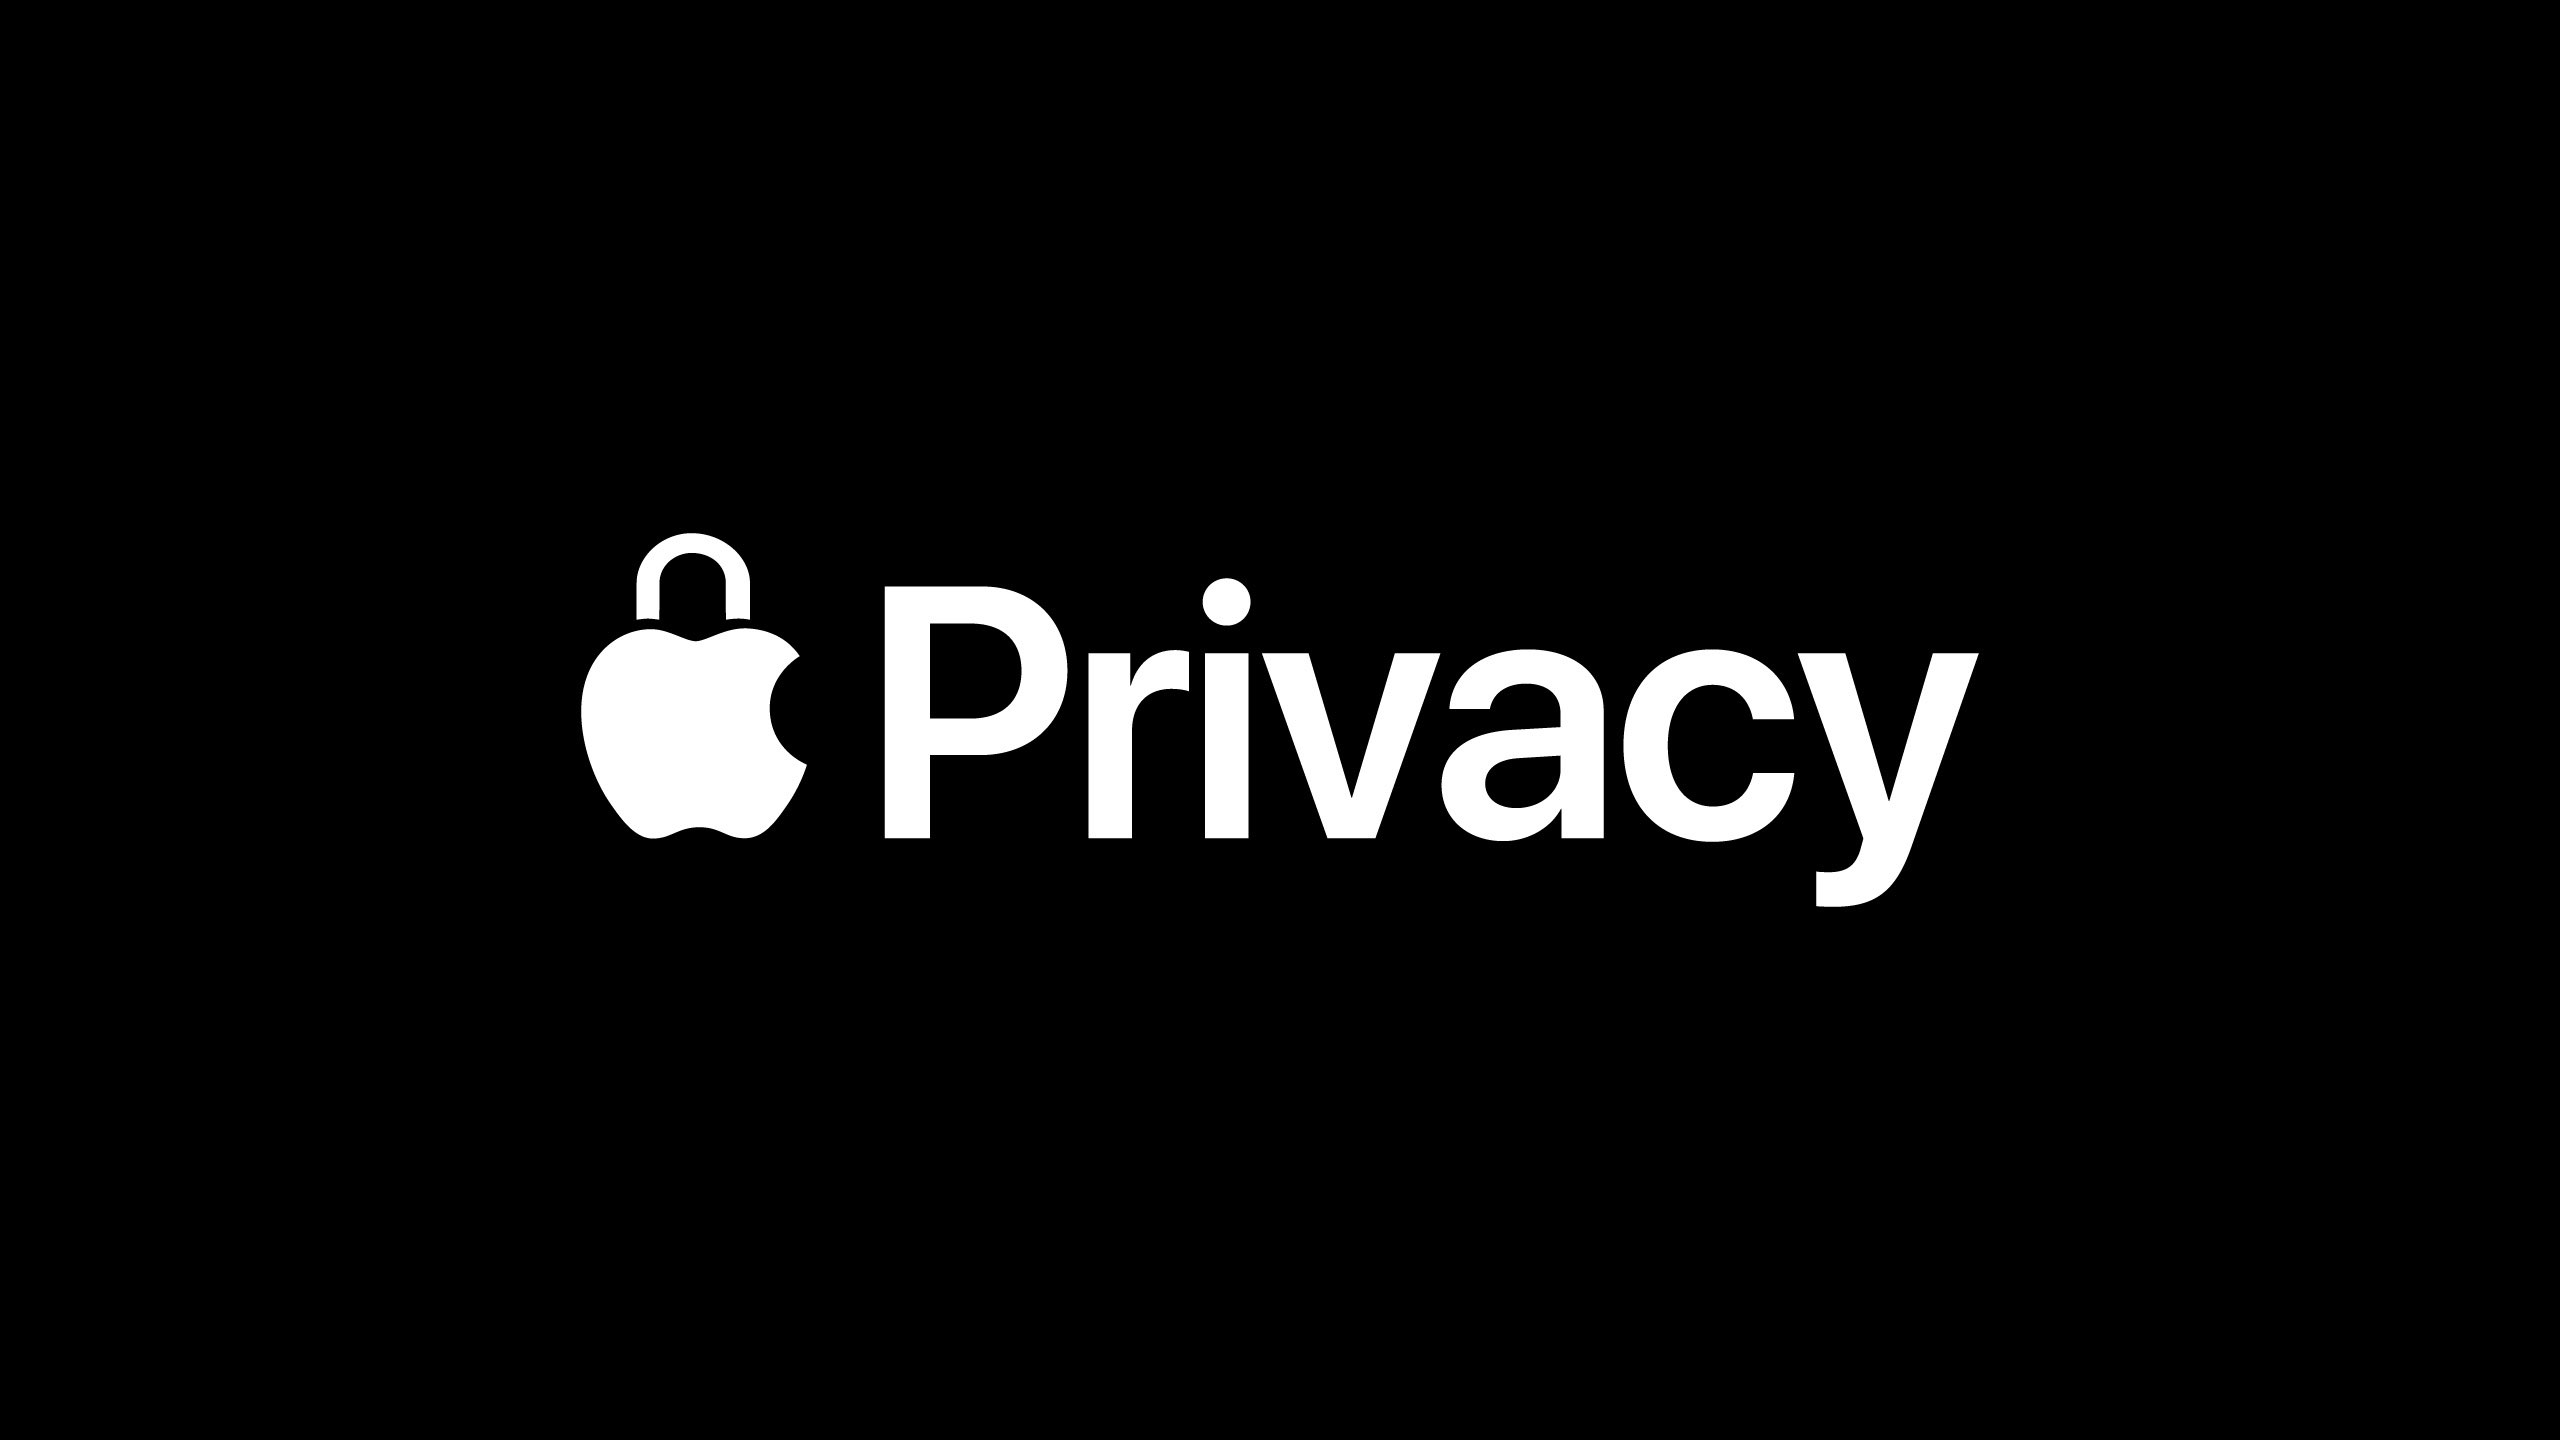 Uno screenshot che mostra il logo Apple con l'icona di un lucchetto e la parola "Privacy" ambientato su uno sfondo completamente nero